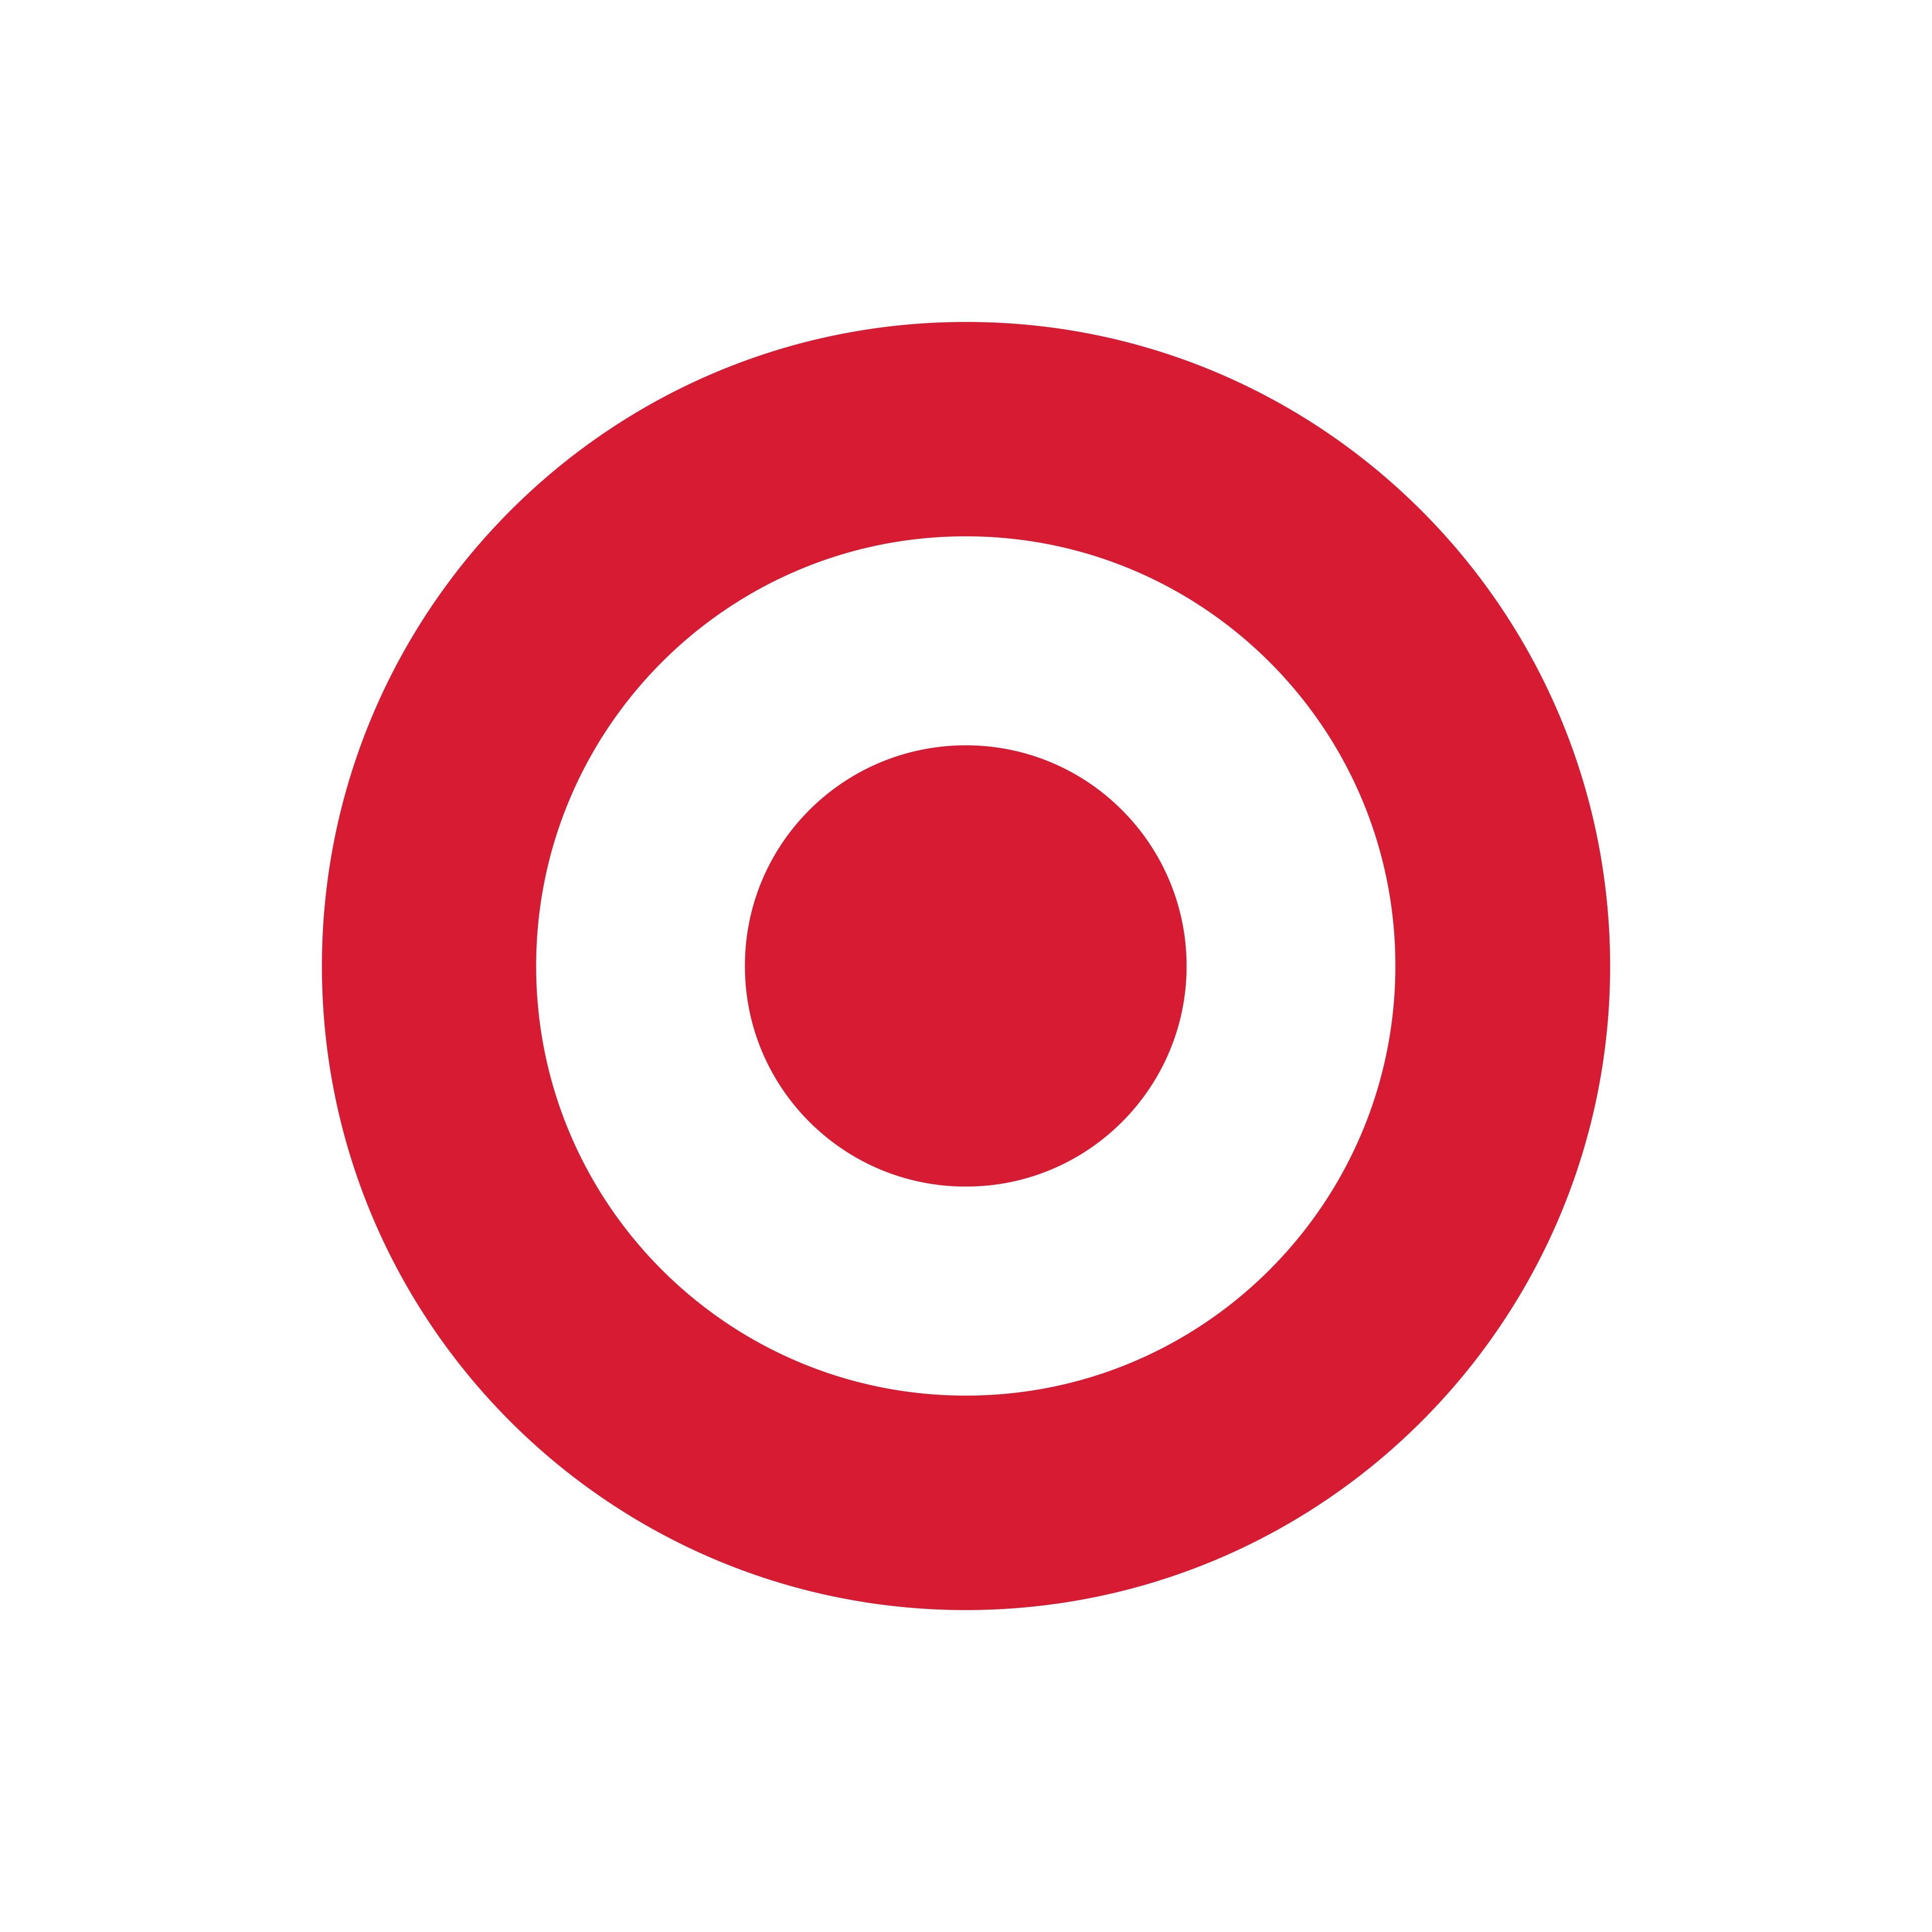 Target grocery store horizontal logo